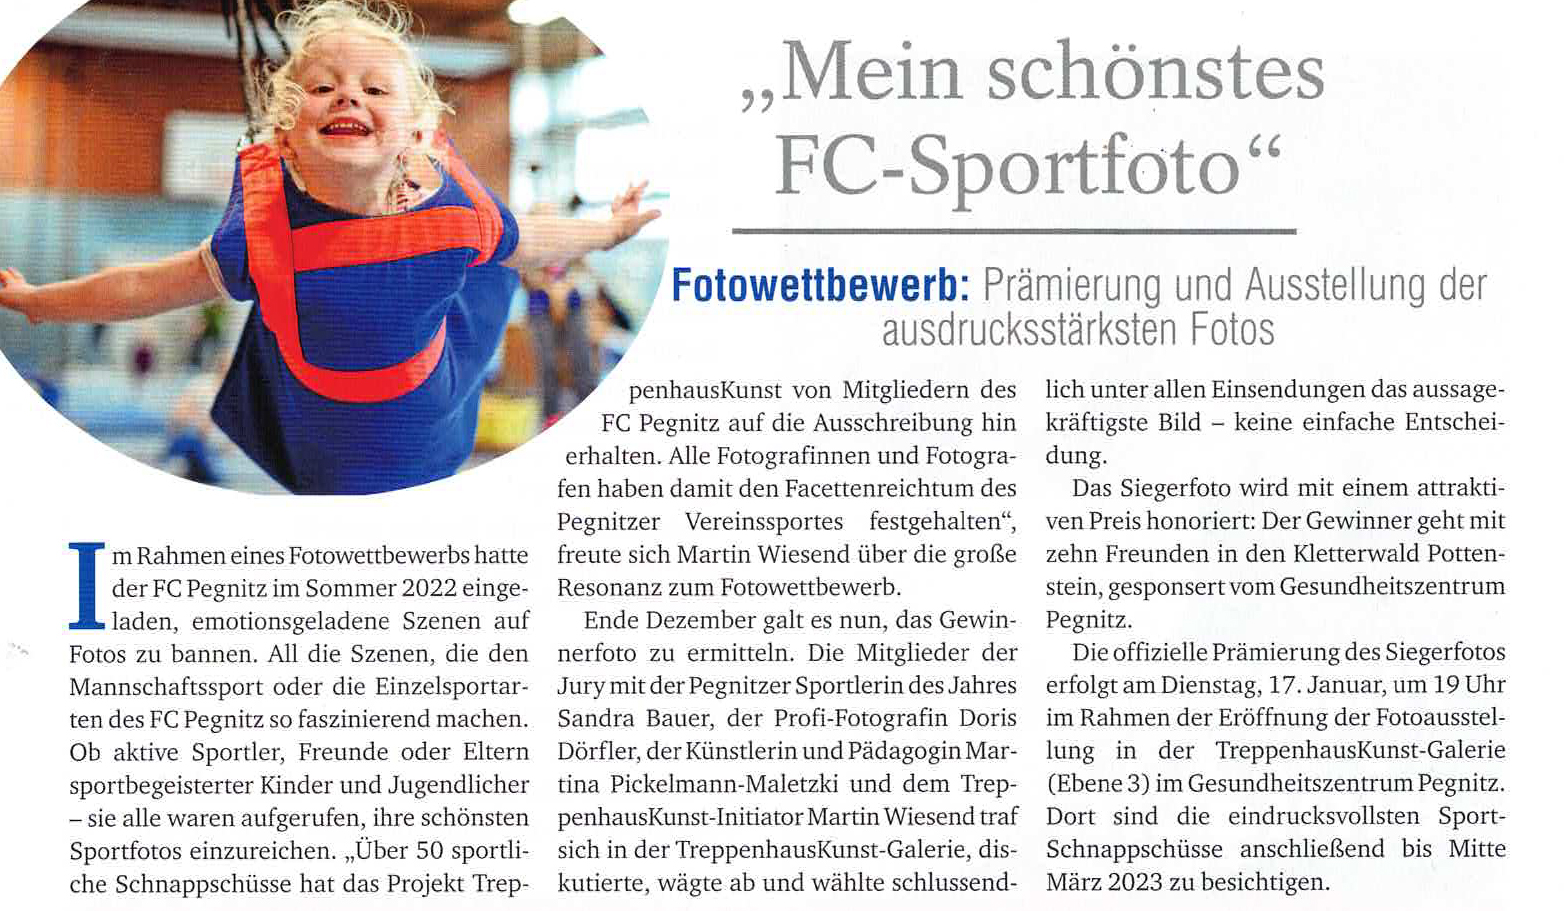 "Mein schönstes FC-Sportfoto" – Blickpunkt Pegnitz – Januar 2023